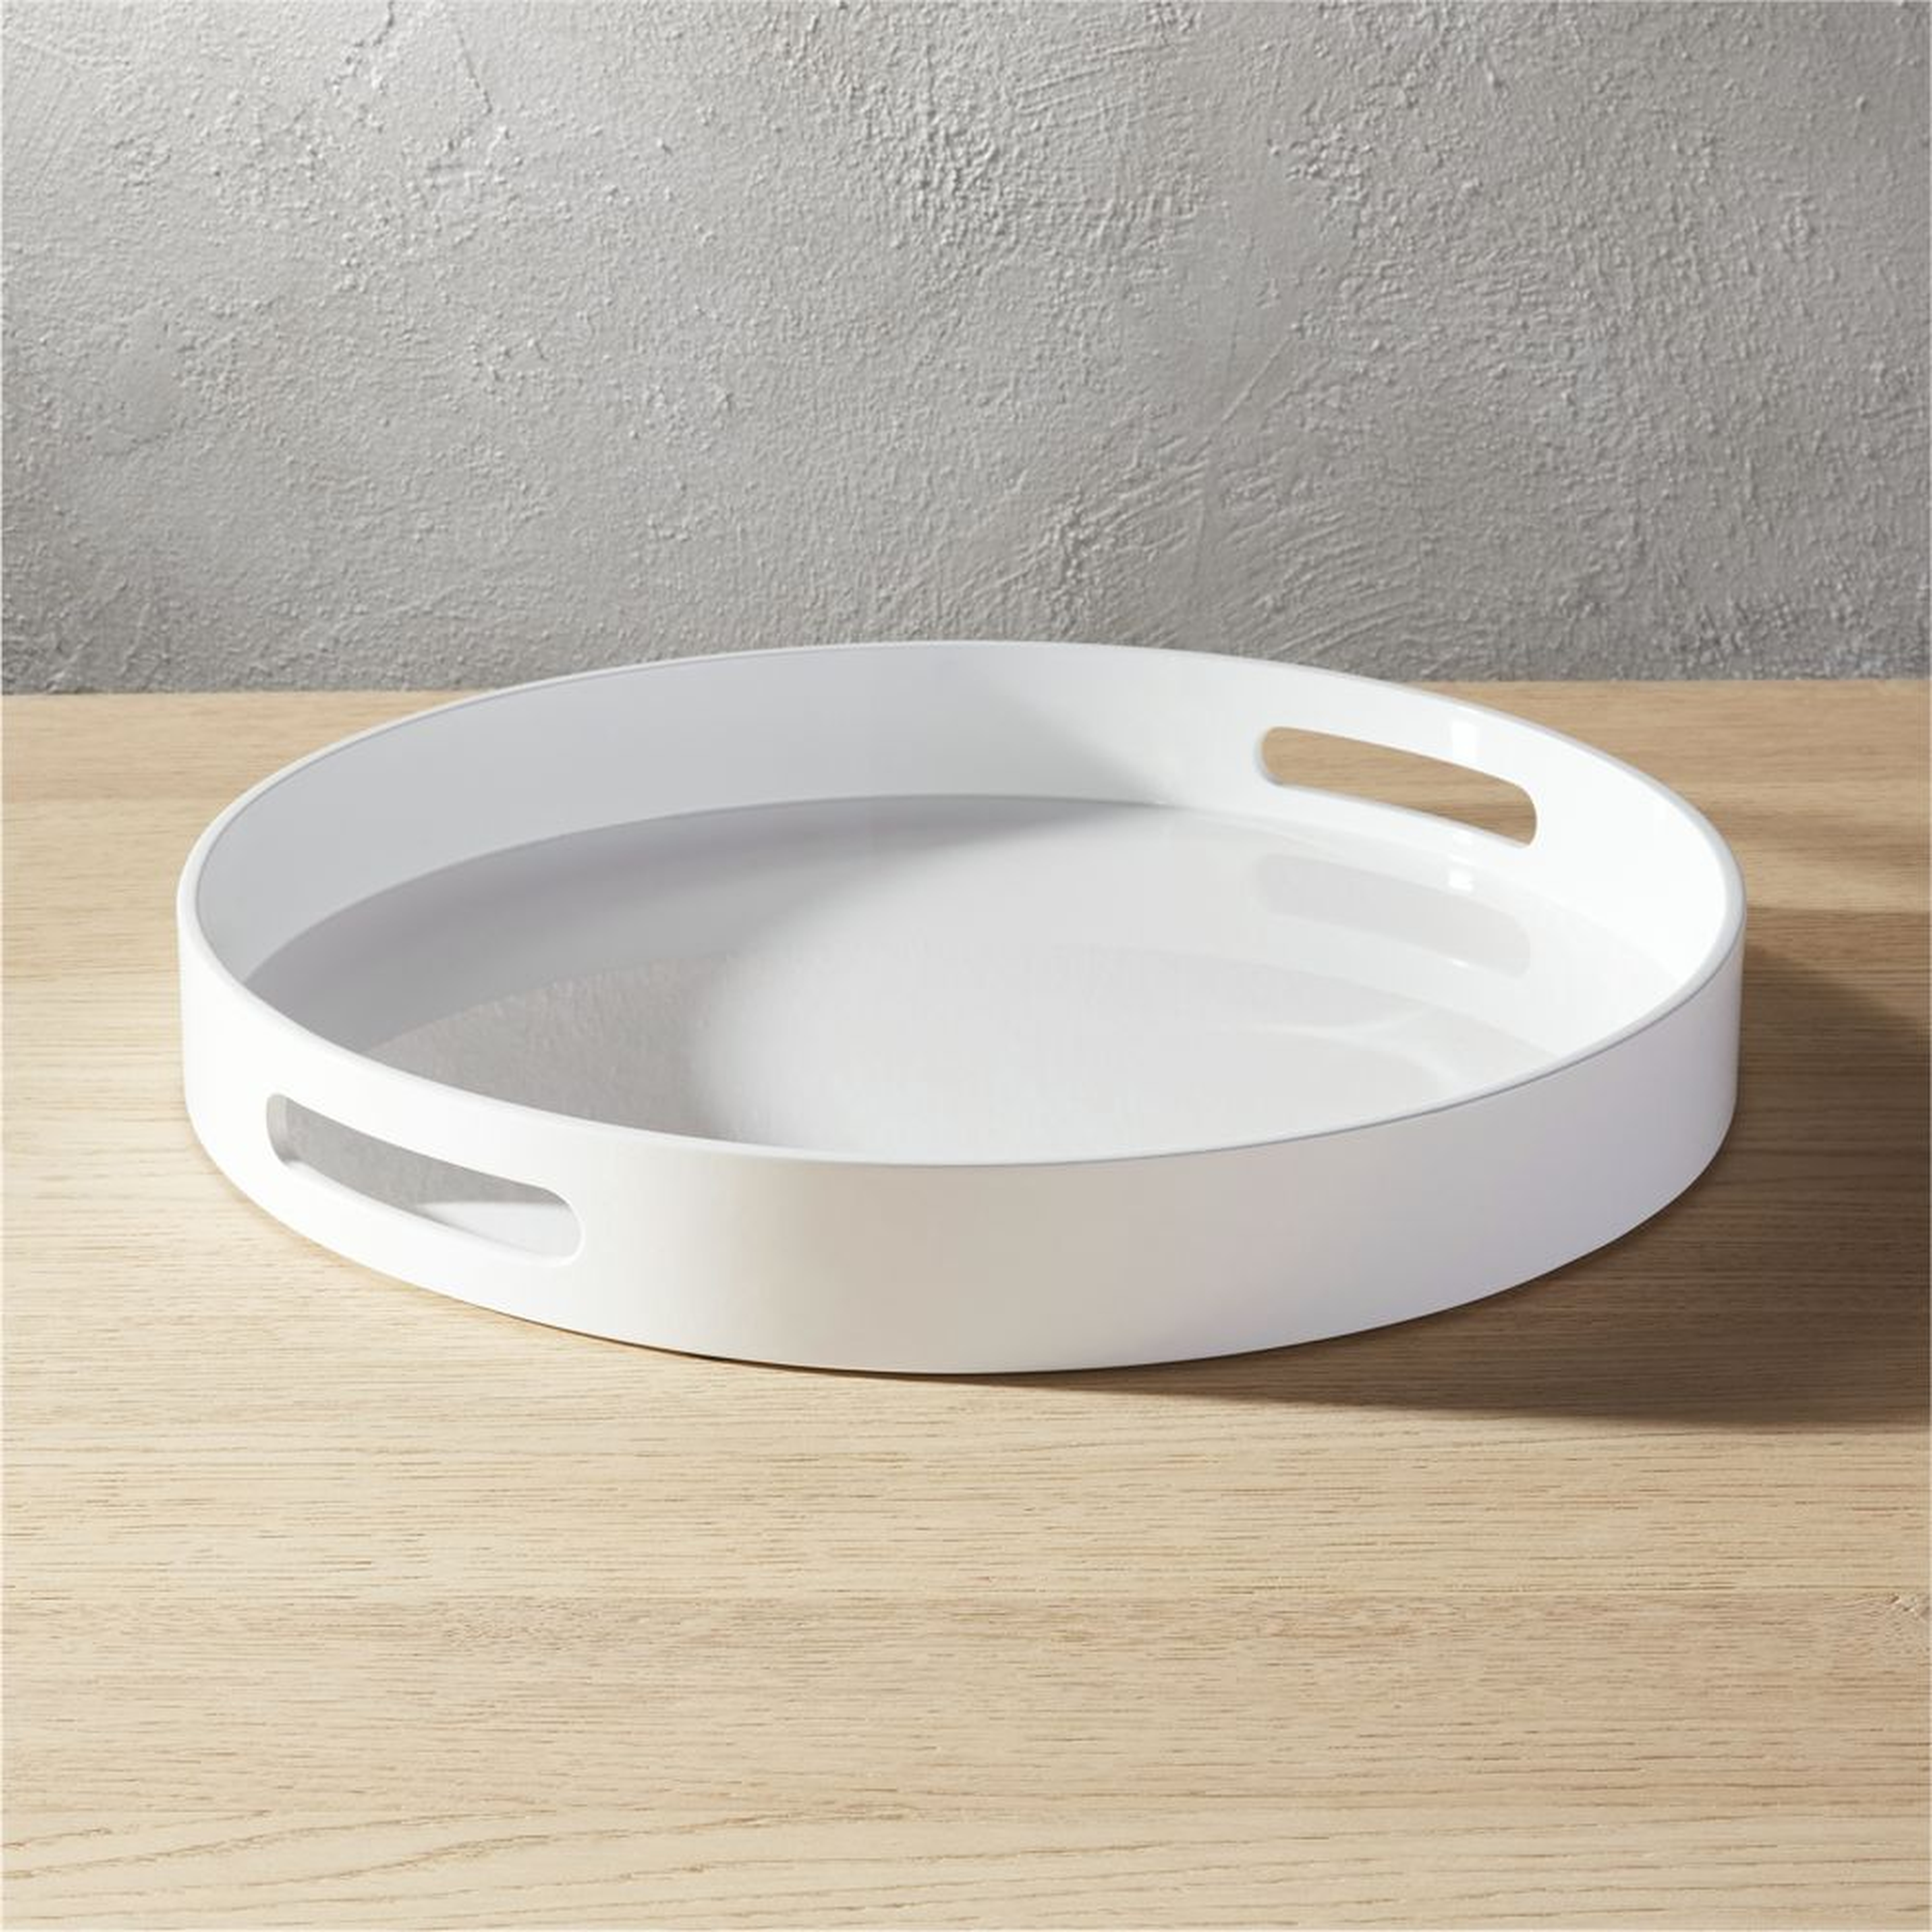 hi-gloss round white tray - CB2